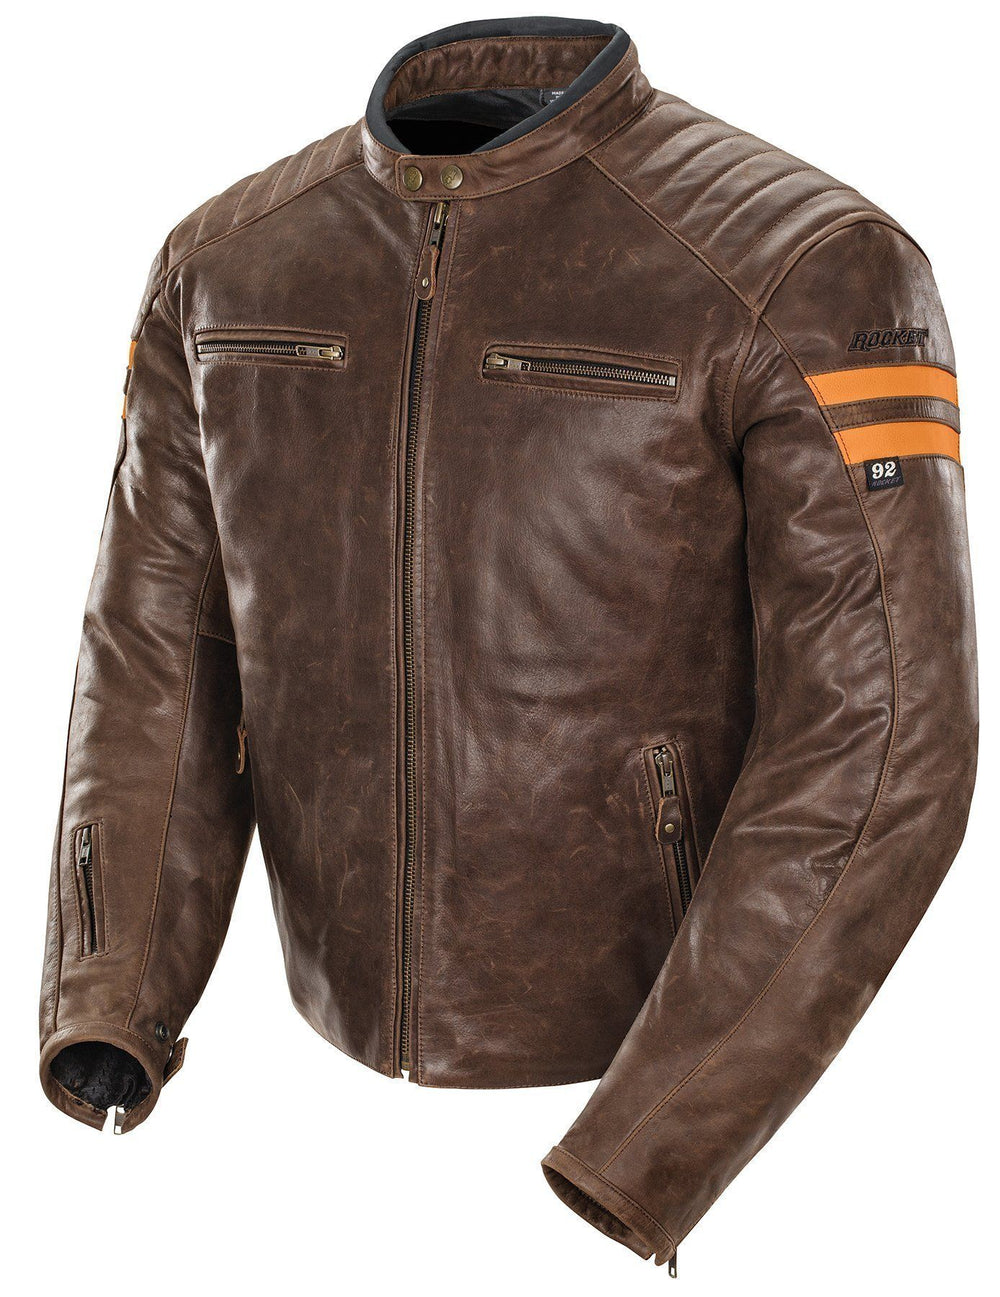 Joe Rocket 'Classic 92' Mens Brown/Orange Leather Motorcycle Jacket